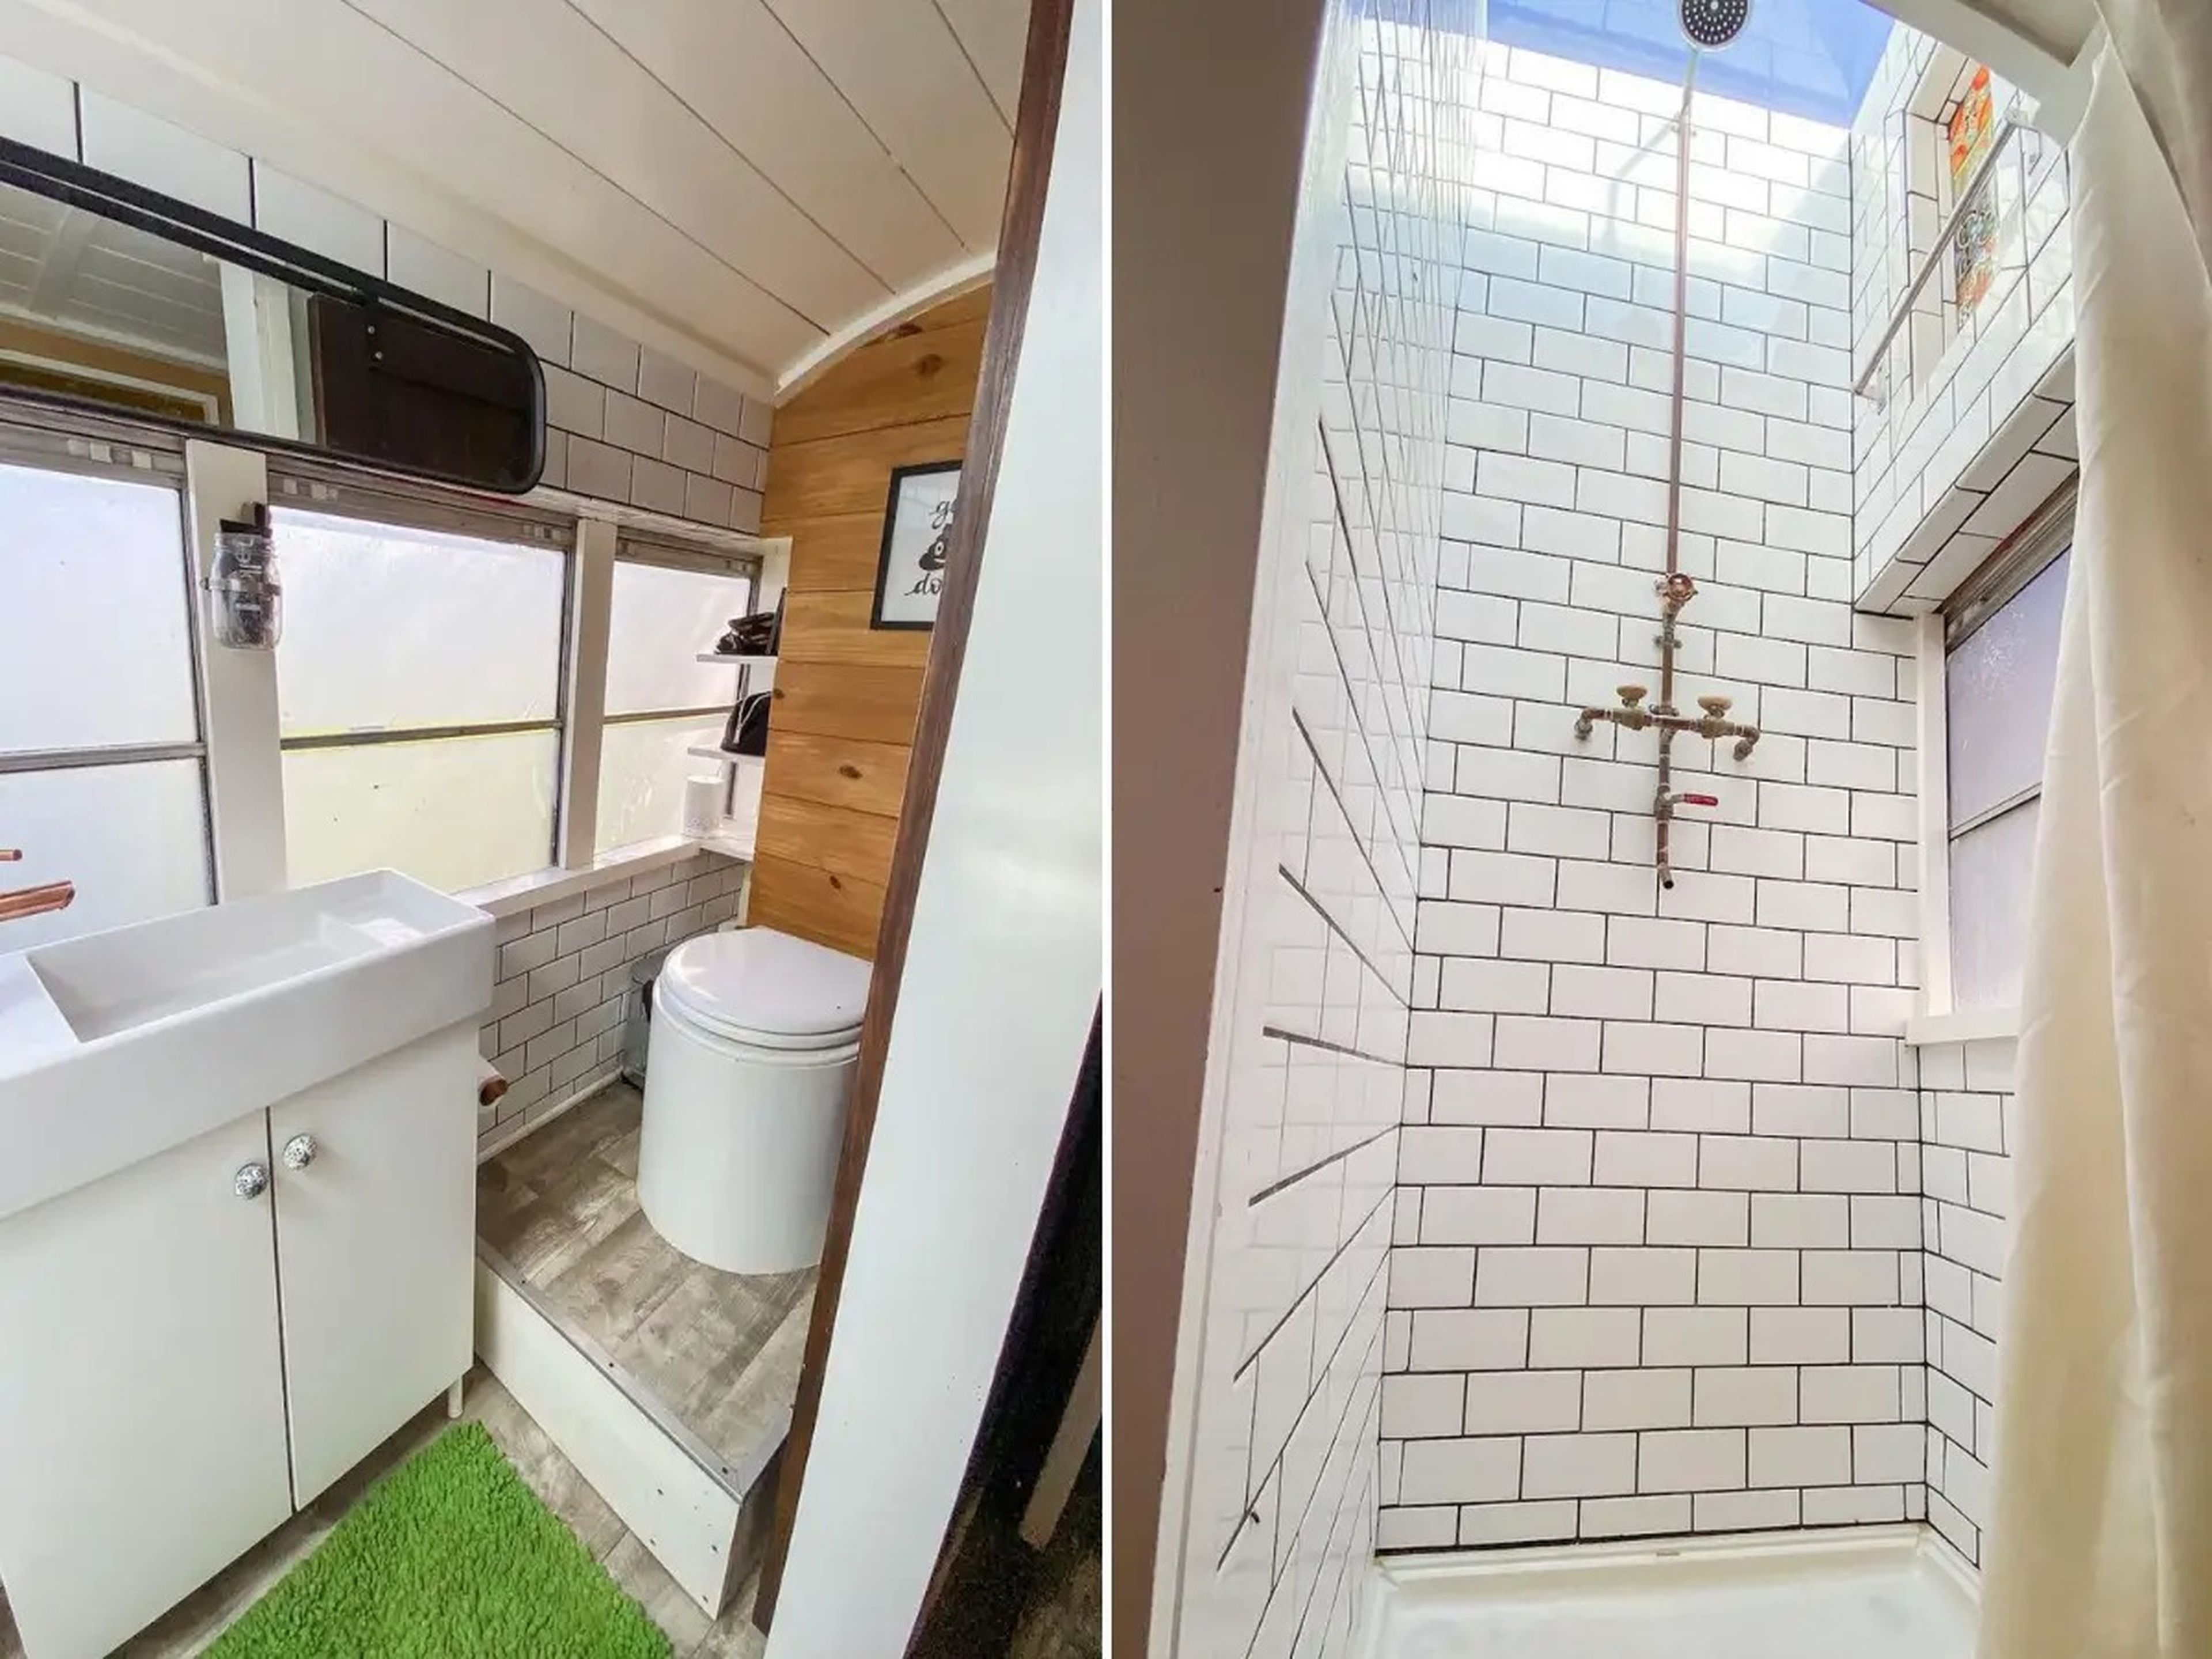 El baño cuenta con inodoro, lavabo y ducha de 2,7 metros de altura.